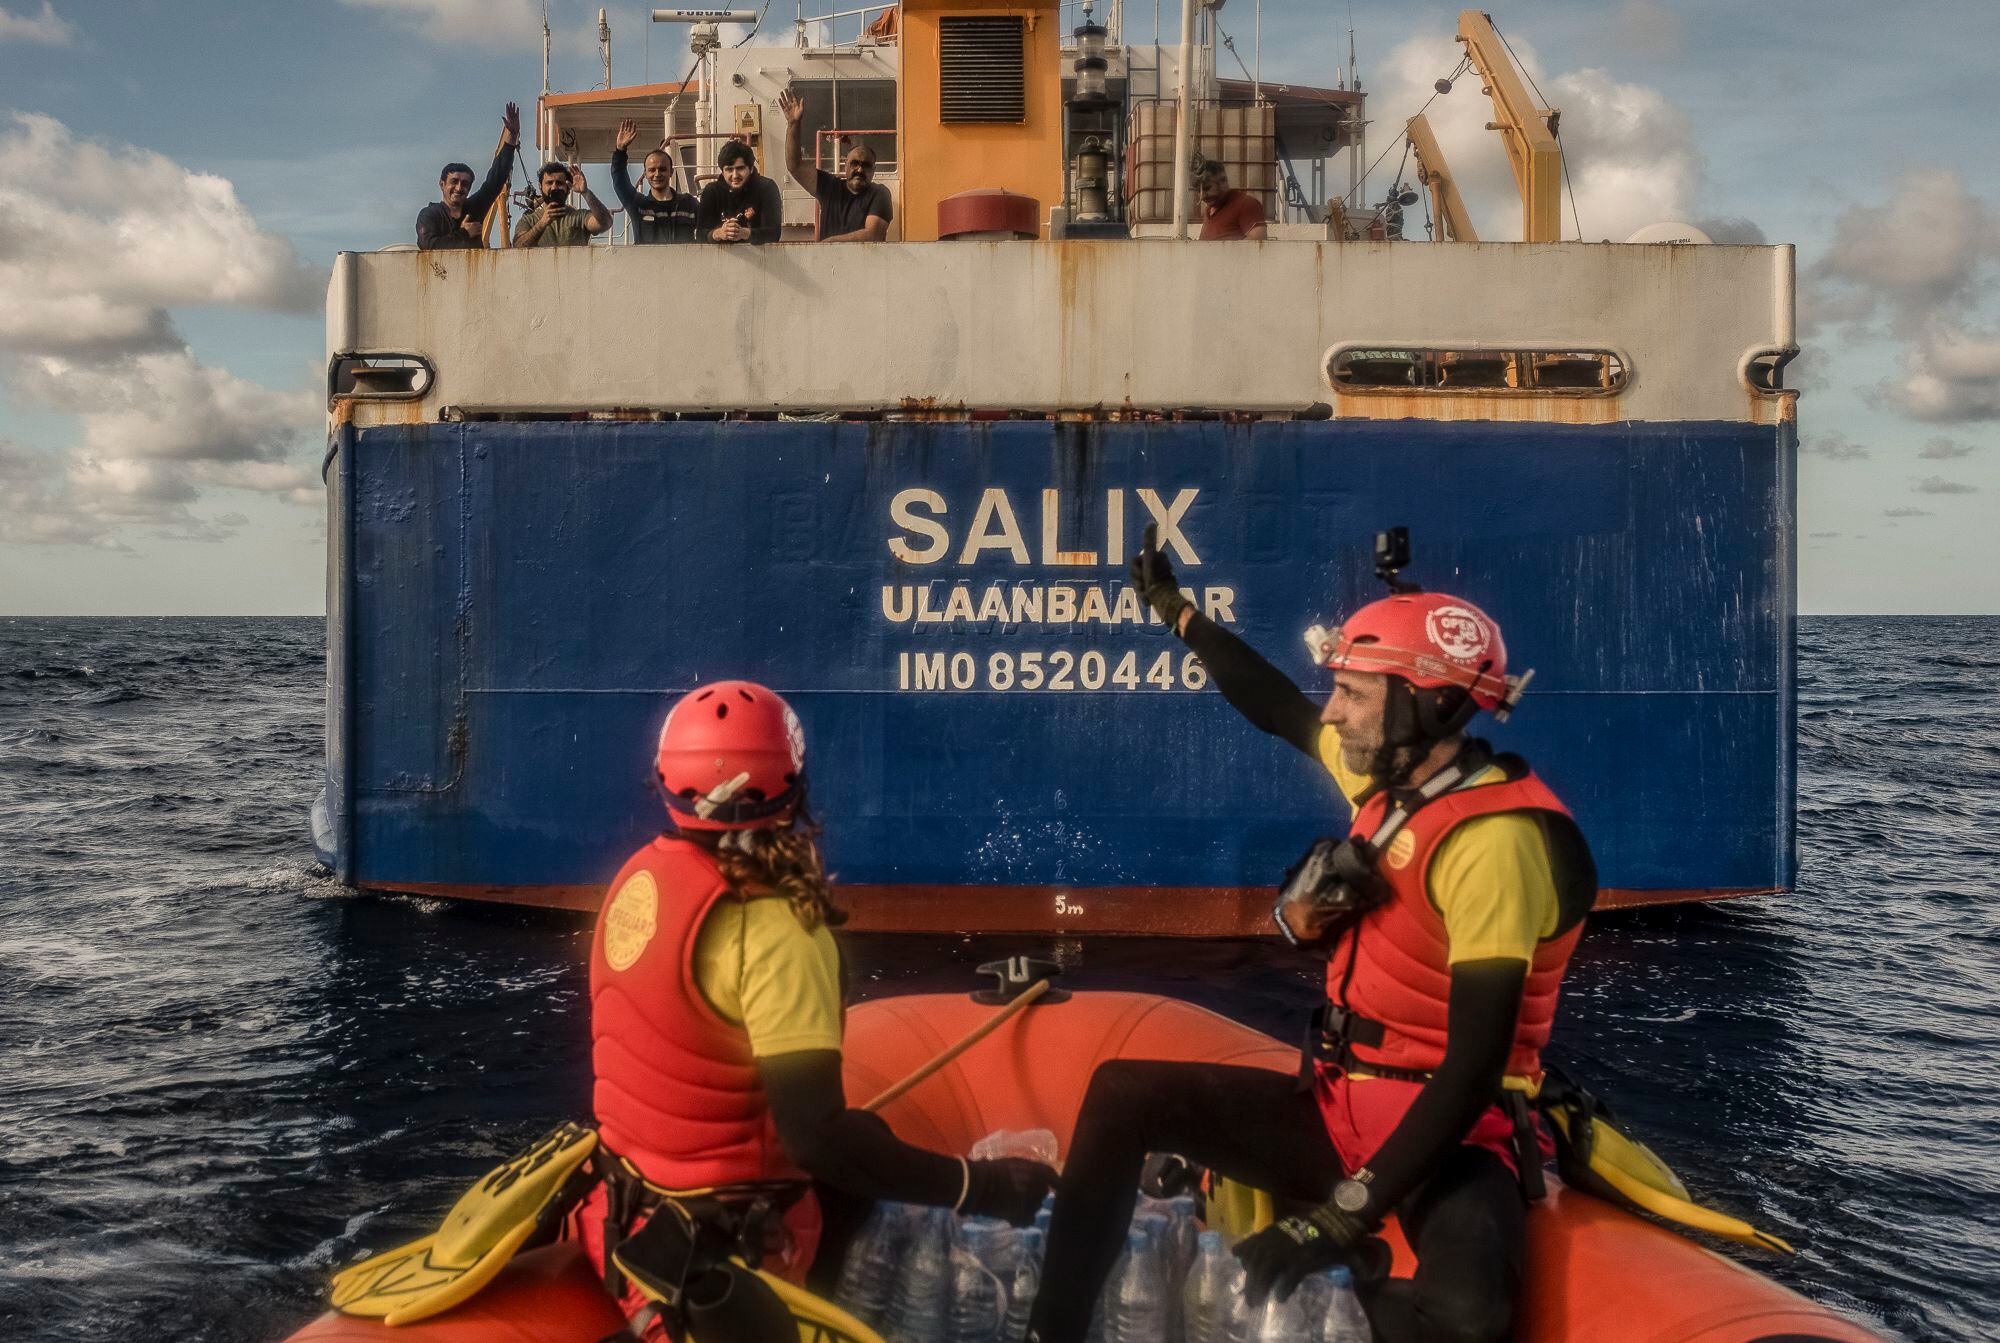 Un barco mercante, de bandera de Mongolia y nombre SALIX, que se encontraba en la zona de rescate, acompañó al equipo de socorristas de Open Arms mientras brindaba ayuda según el protocolo de los tratados internacionales de la Organización Internacional para las Migraciones, proporcionando agua, galletas y mantas para los voluntarios de la ONG española y los tripulantes del bote en peligro.